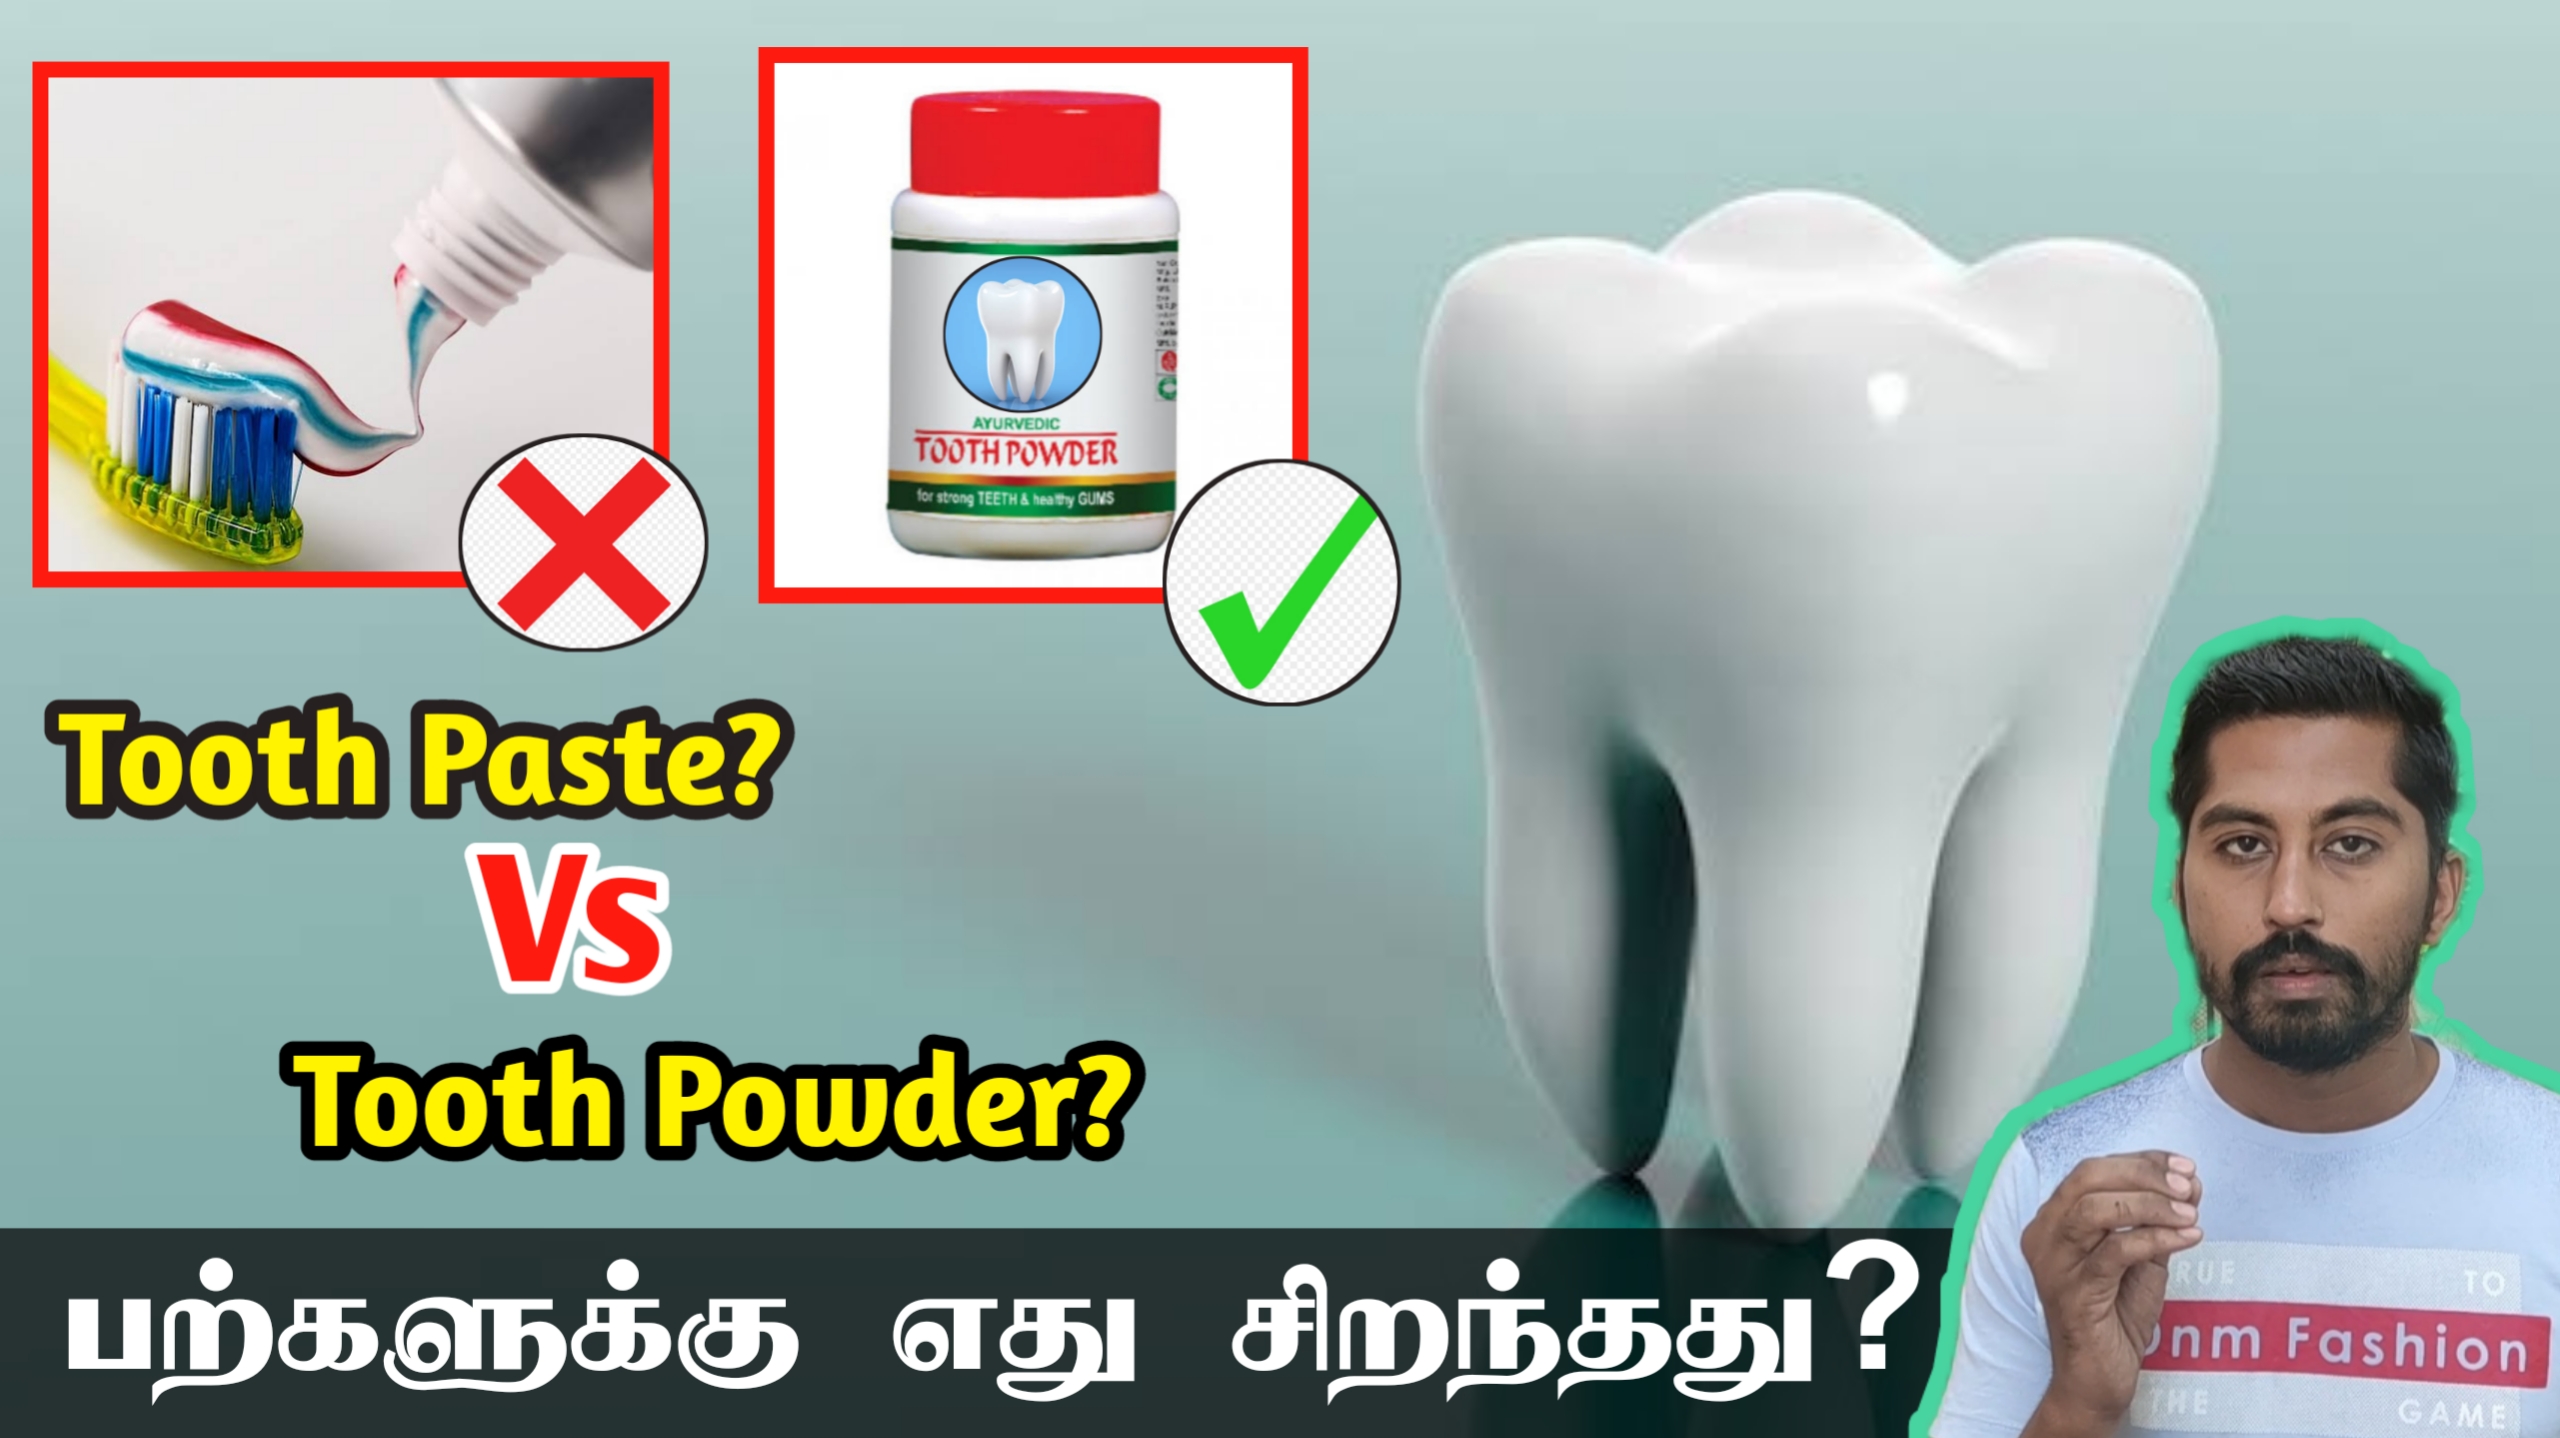 பல் சொத்தை ஏற்படாமல் தடுப்பது பல் பொடியா? பேஸ்ட் ah? | Thooth paste vs tooth powder which is best?